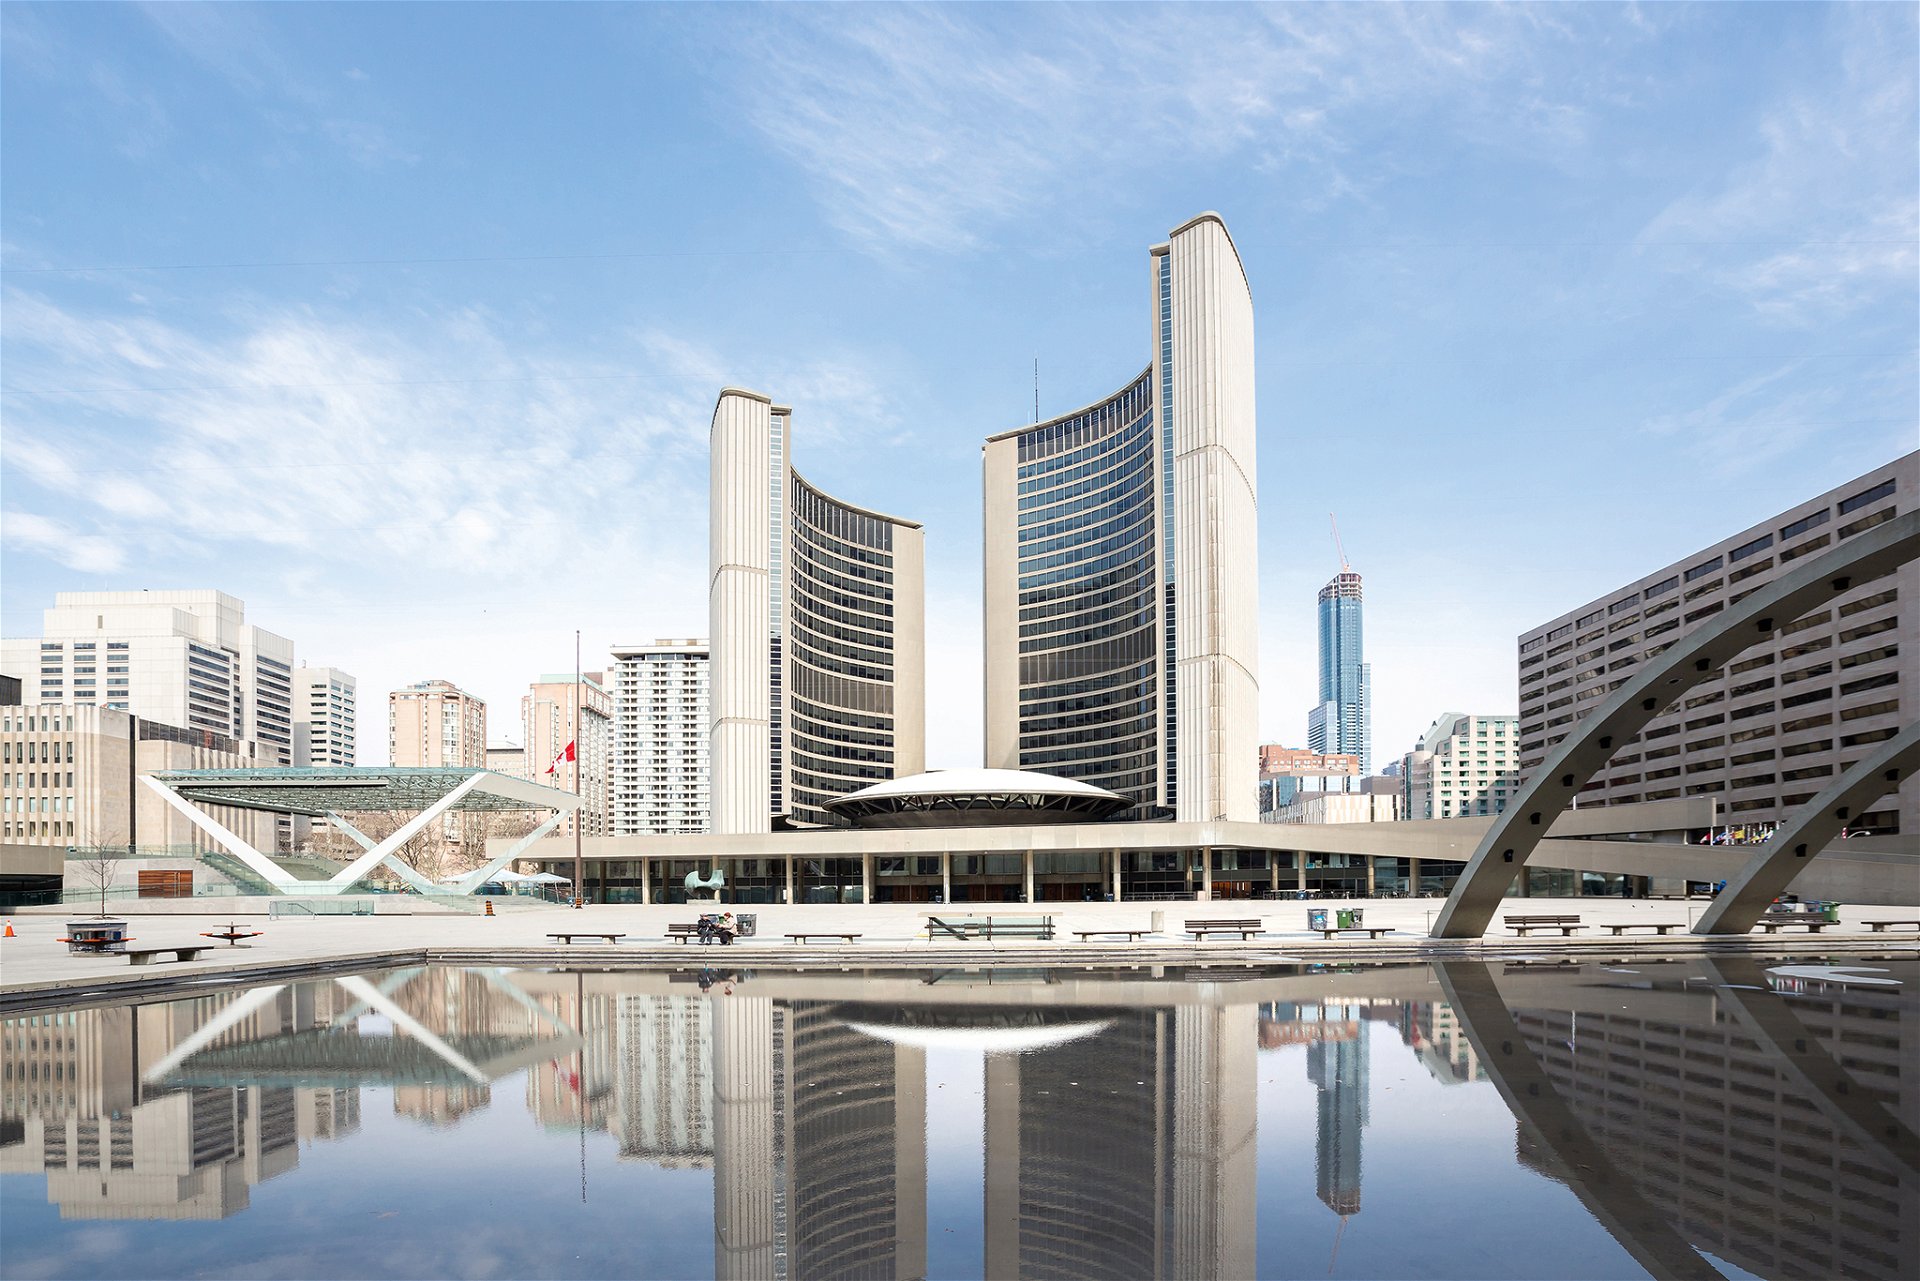 Toronto City Hall Viljo Revell, 1965 »Der finnische Architekt Viljo Revell gewann den internationalen Wettbewerb mit diesem fantastischen Stück sozial-demokratischer Moderne: Zwei kurvenförmige Türme rahmen den runden Saal, in dem sich die Stadtoberen treffen.«